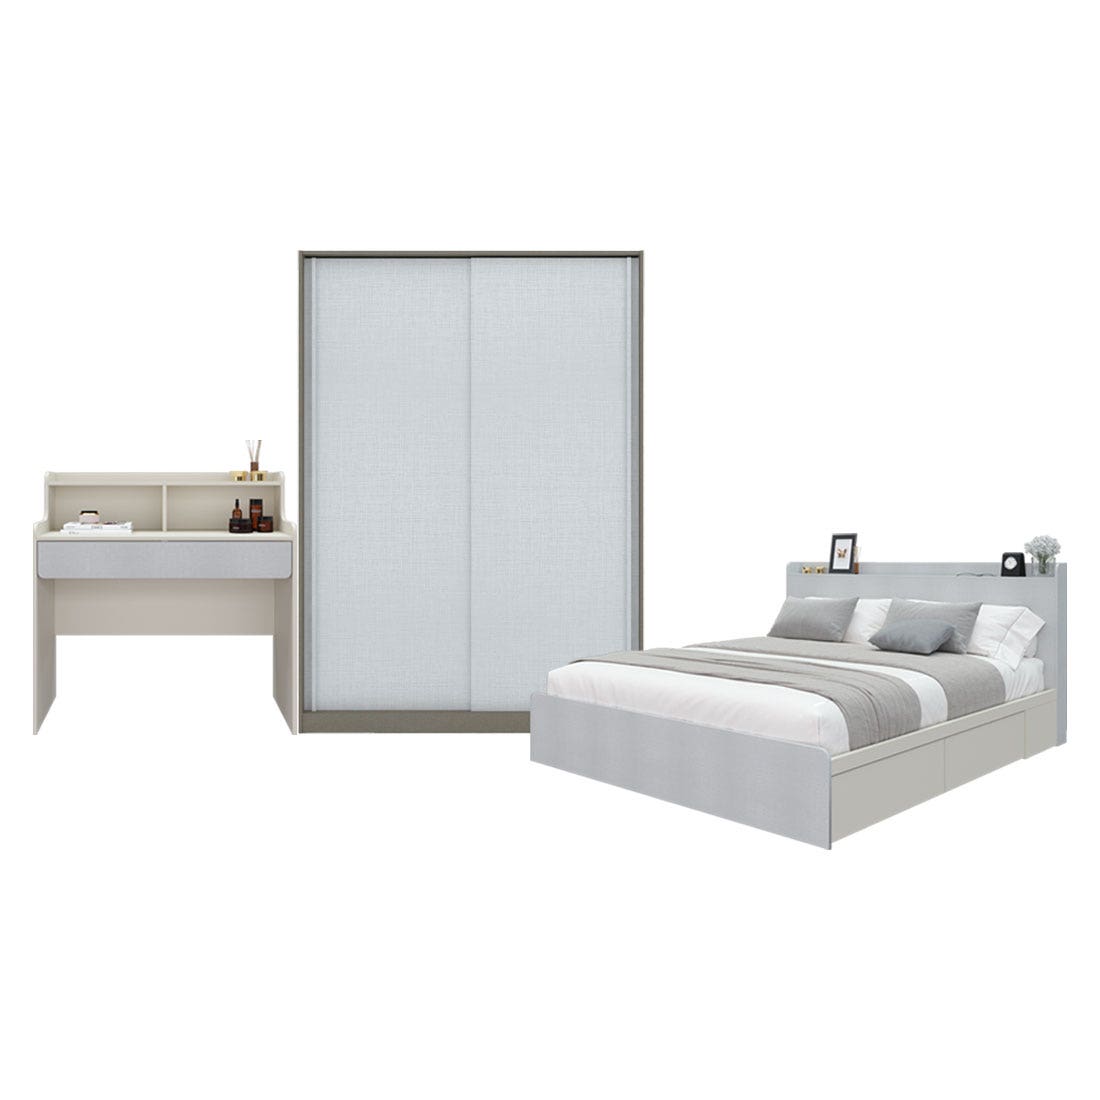 ชุดห้องนอน 5 ฟุต & ตู้ Blox บานเลื่อน 150 ซม. & โต๊ะเครื่องแป้ง รุ่น Aiko สีขาว01